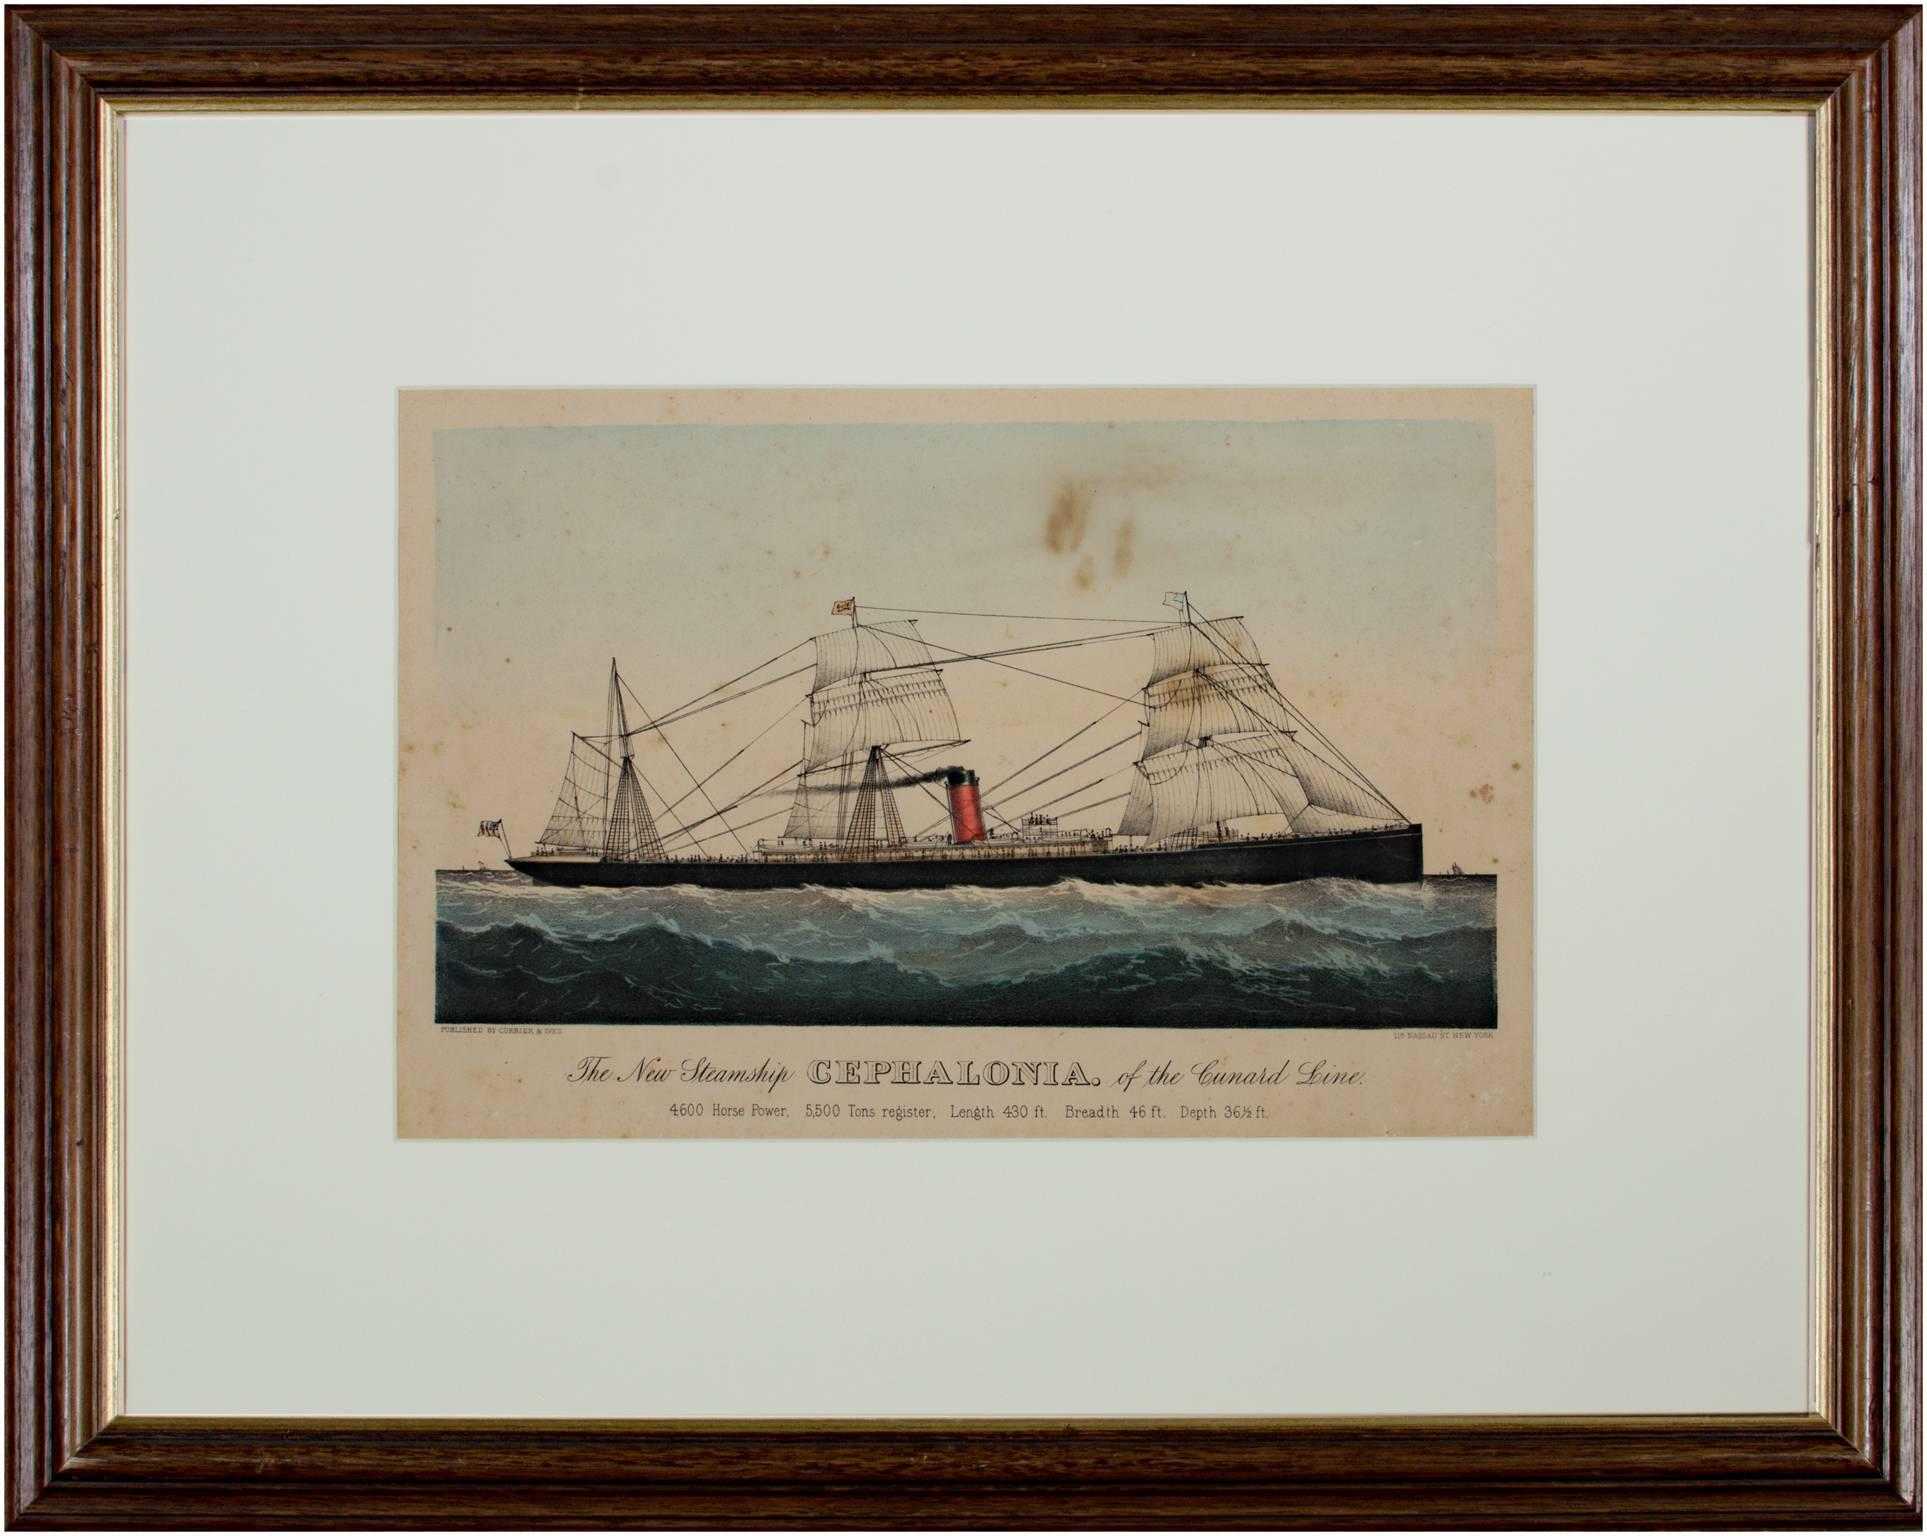 1800s steamship